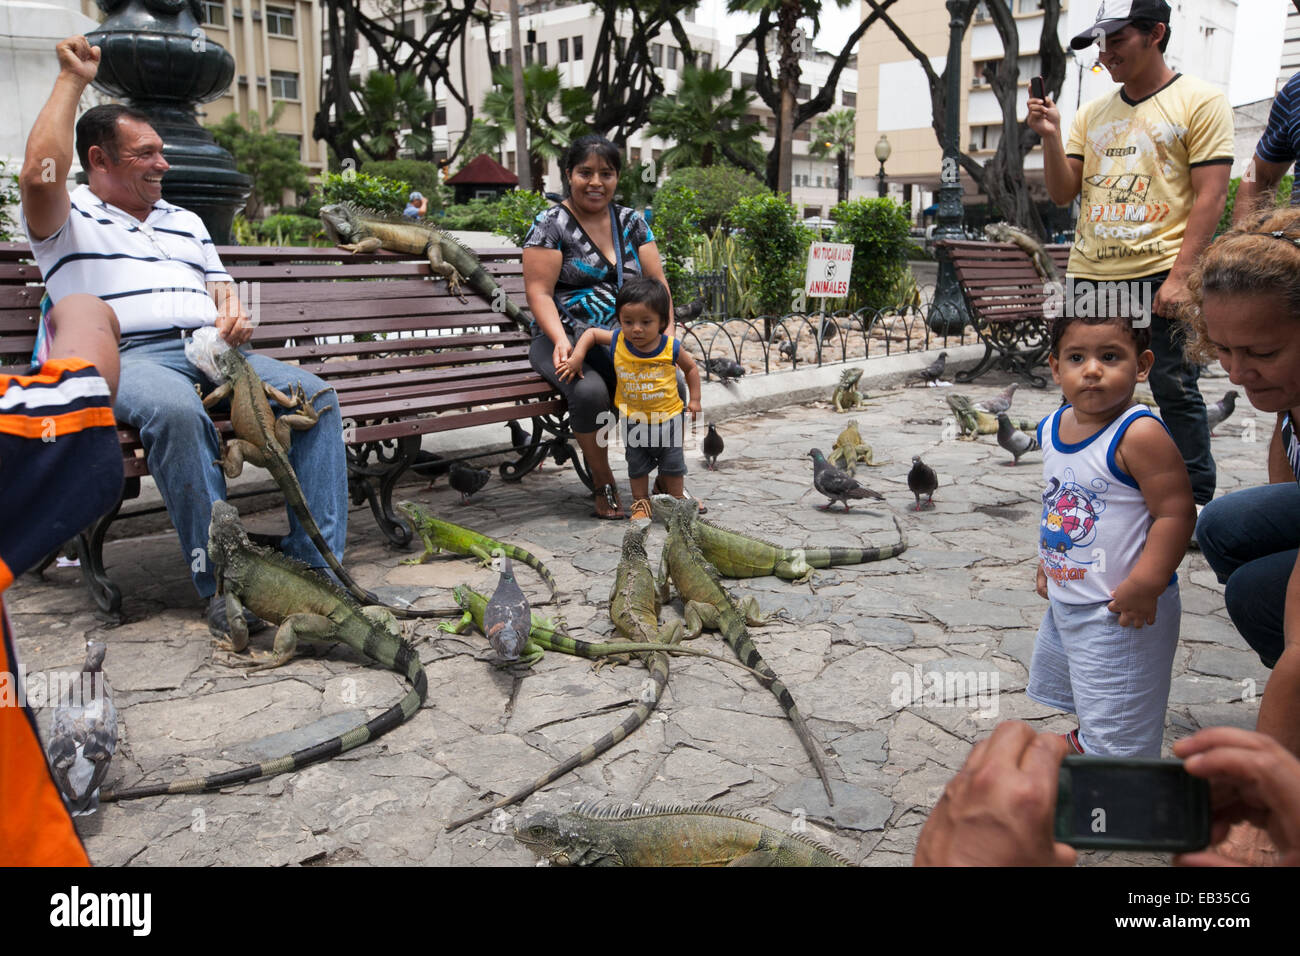 Menschen versammelt, um zu beobachten, mit spielen und füttern zahme Leguane und Tauben in einem Stadtpark. Stockfoto